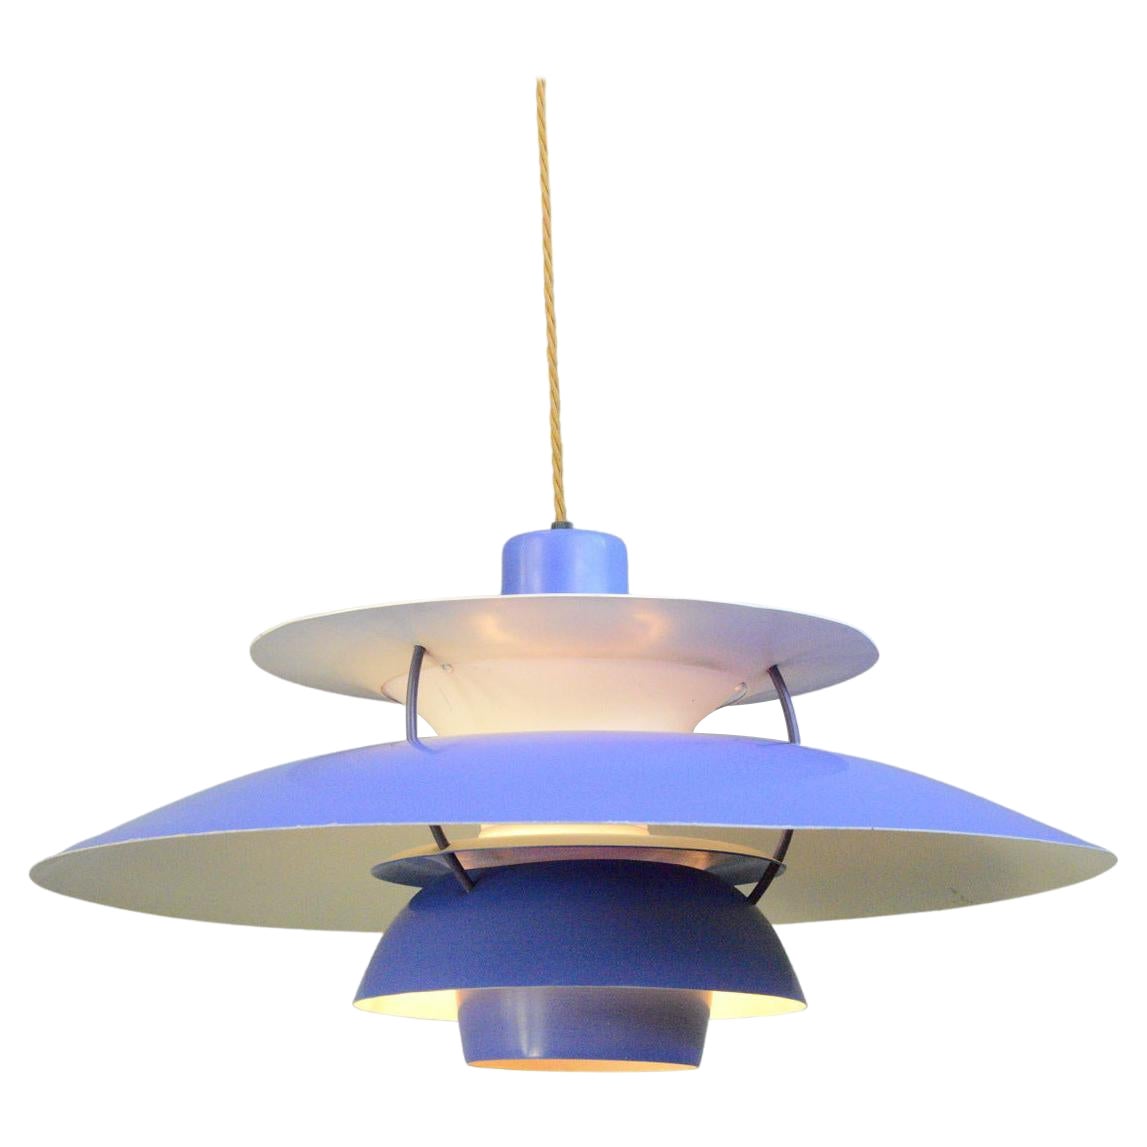 Blue Model PH5 Pendant Lights by Louis Poulson, Circa 1960s